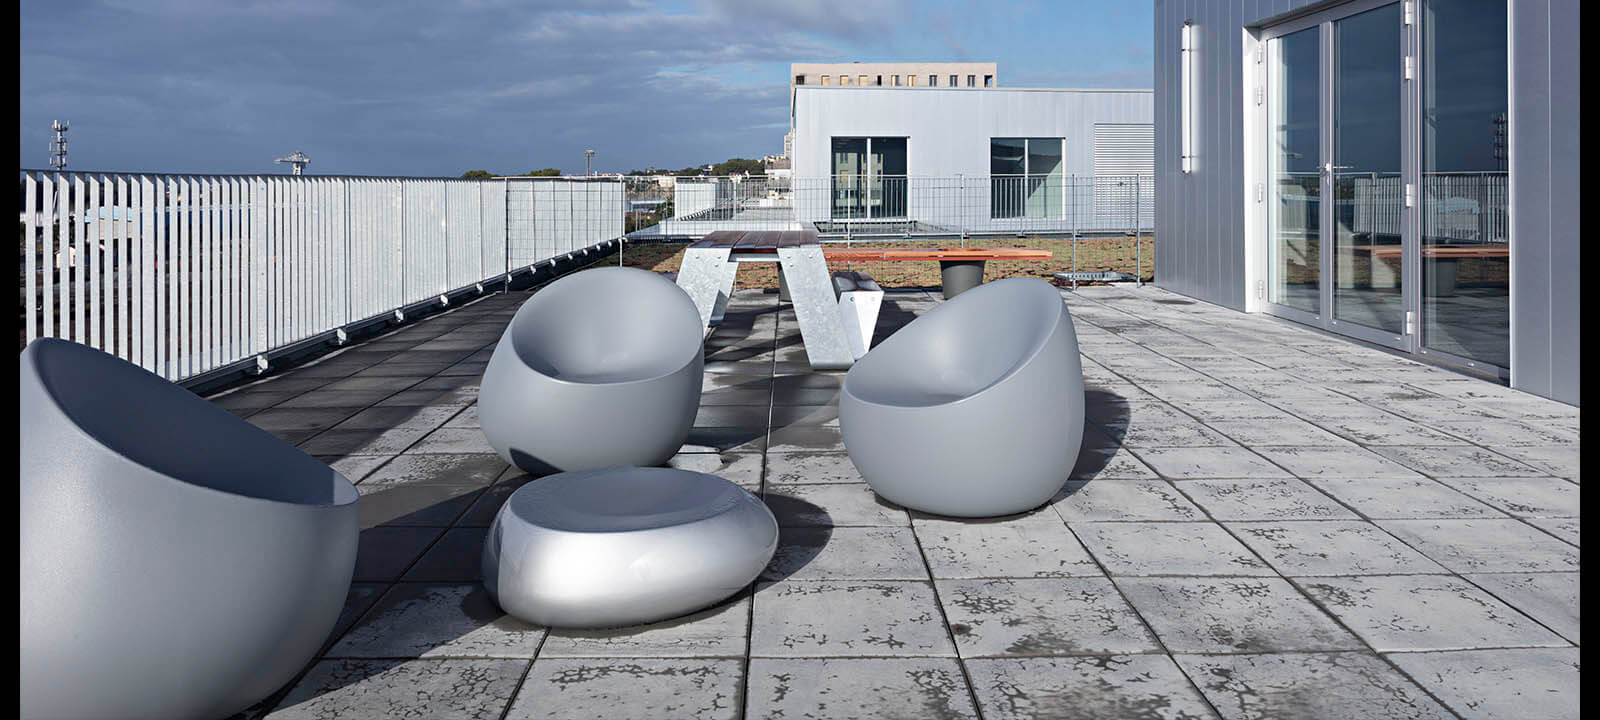 image de la terrasse de l'école de design de Nantes Atlantique pour IDM par Gwenaelle hoyet photographe